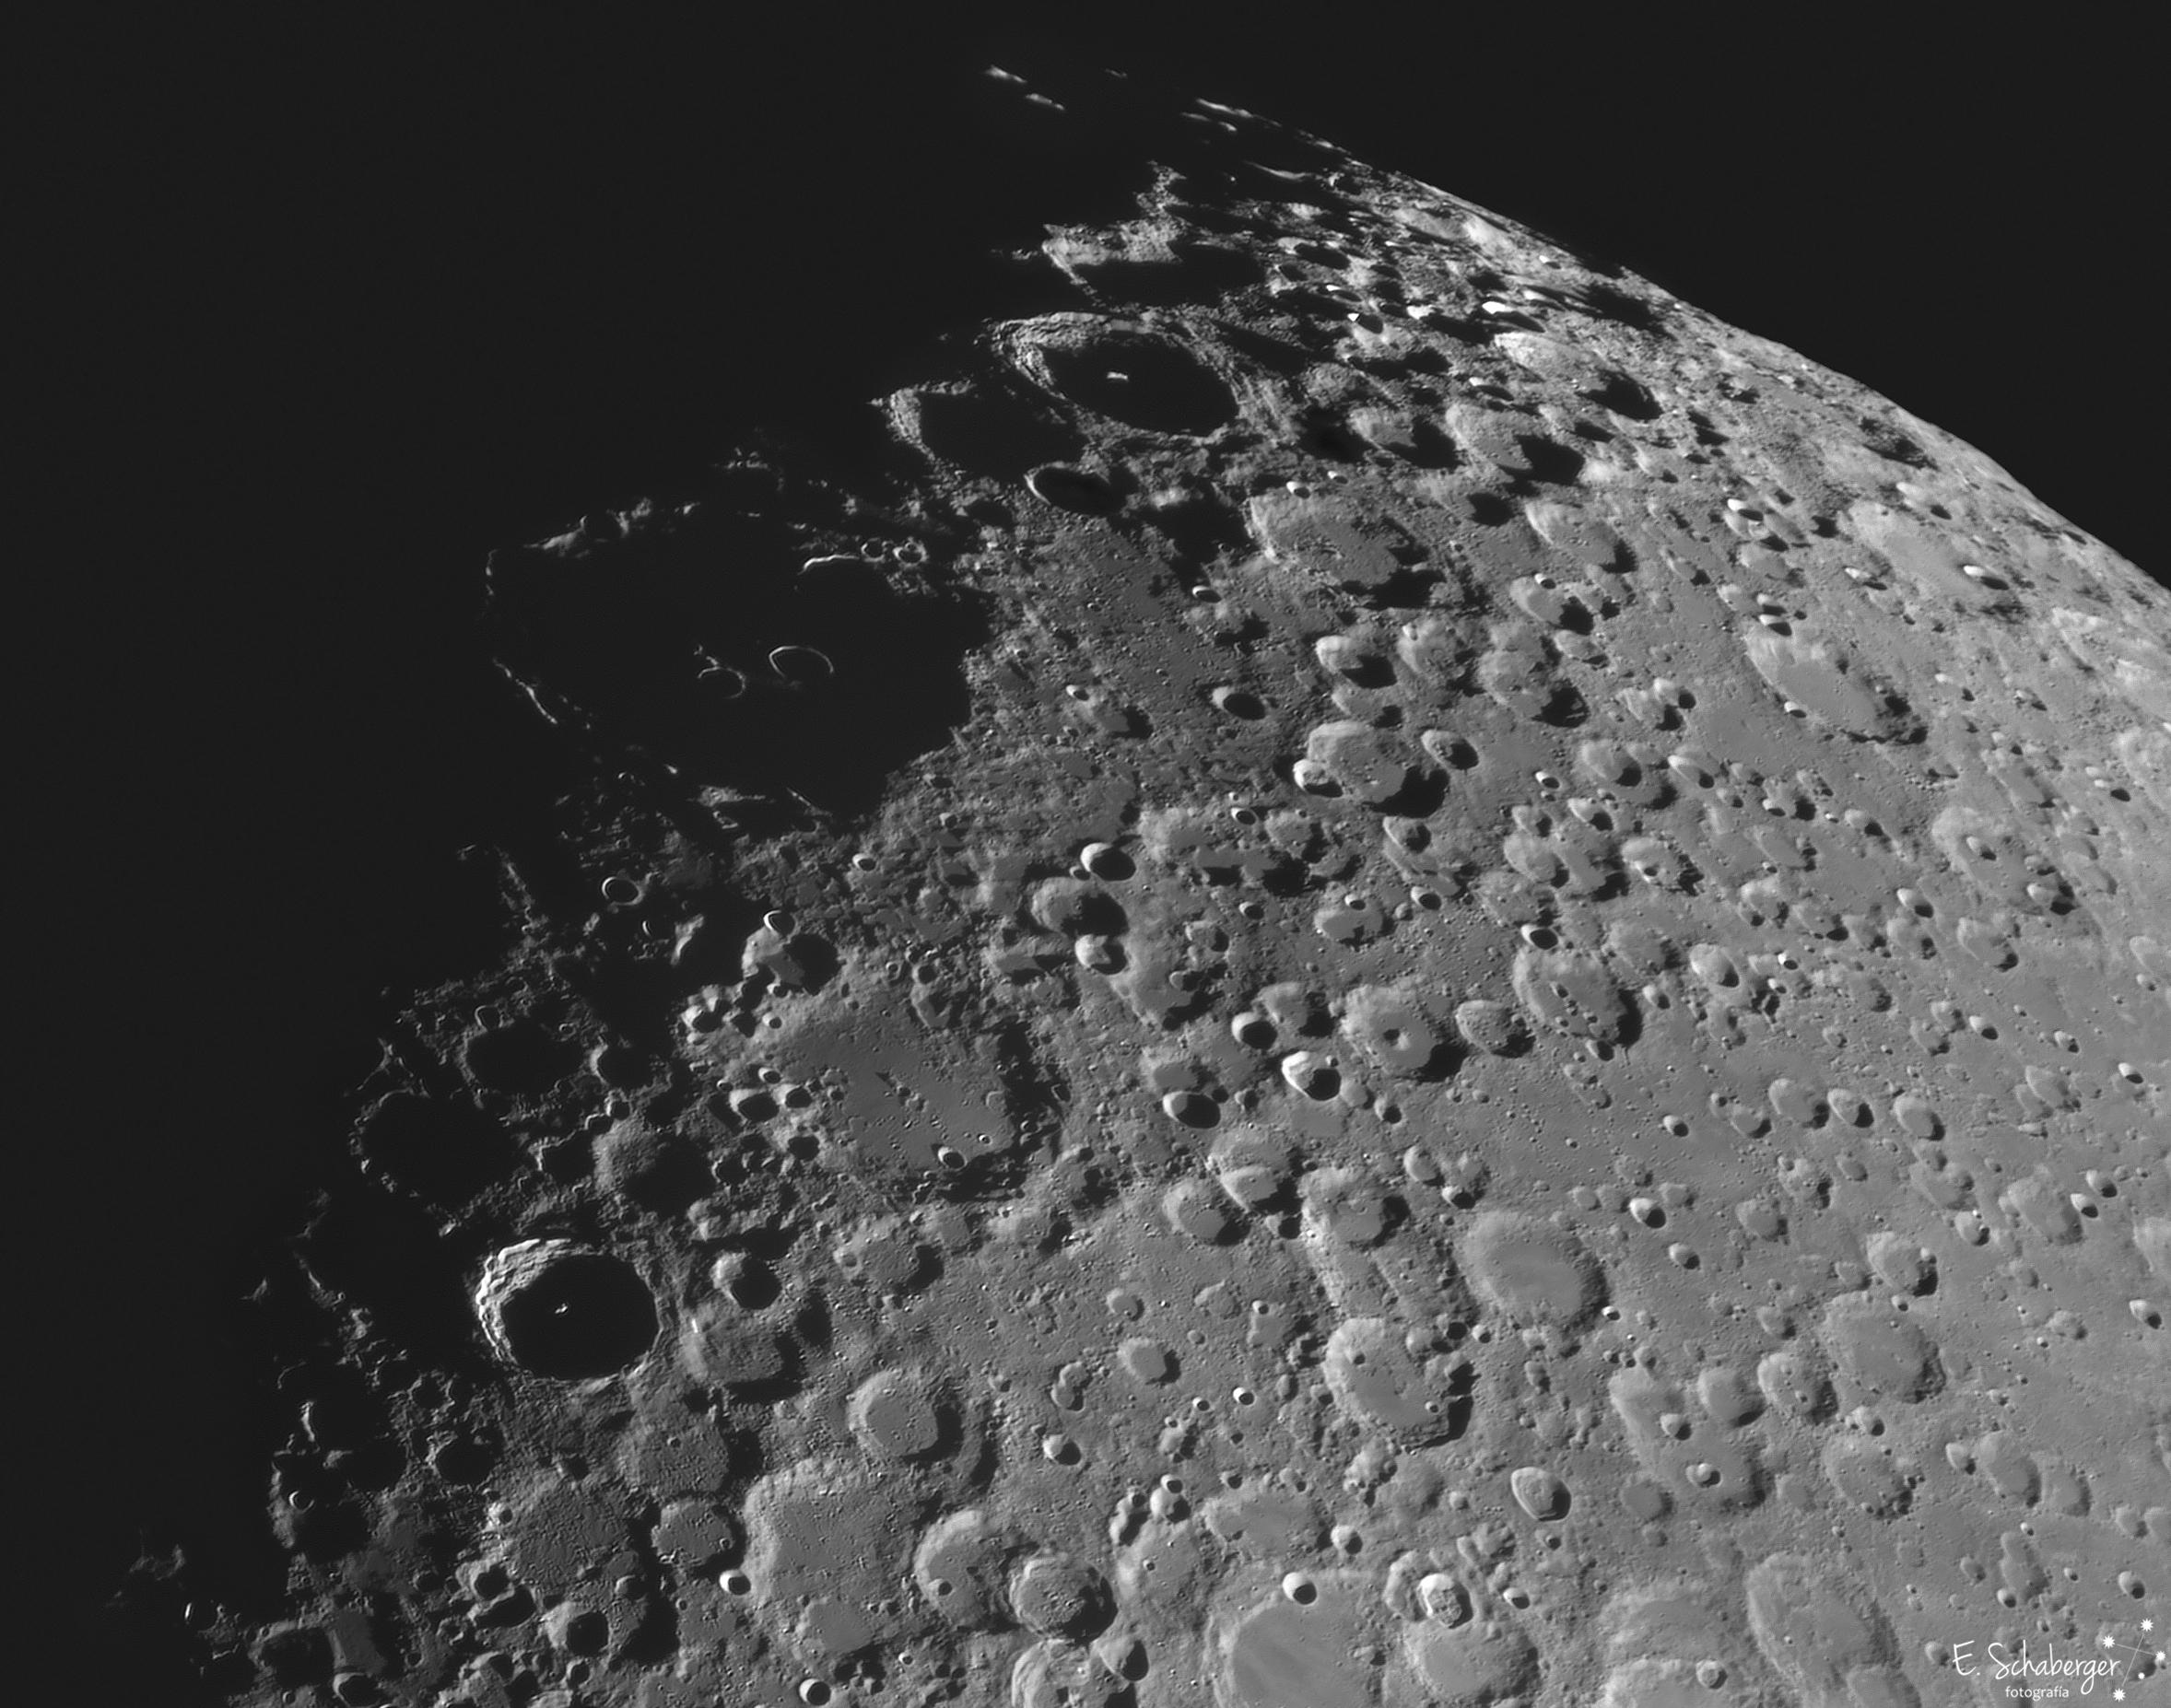 صورة مقرّبة لسطح القمر تظهر فوّهات عديدة منها تيخو بقمّتها التي تتوسطها وكلاڤيوس بفوّهتين صغيرتين داخلها